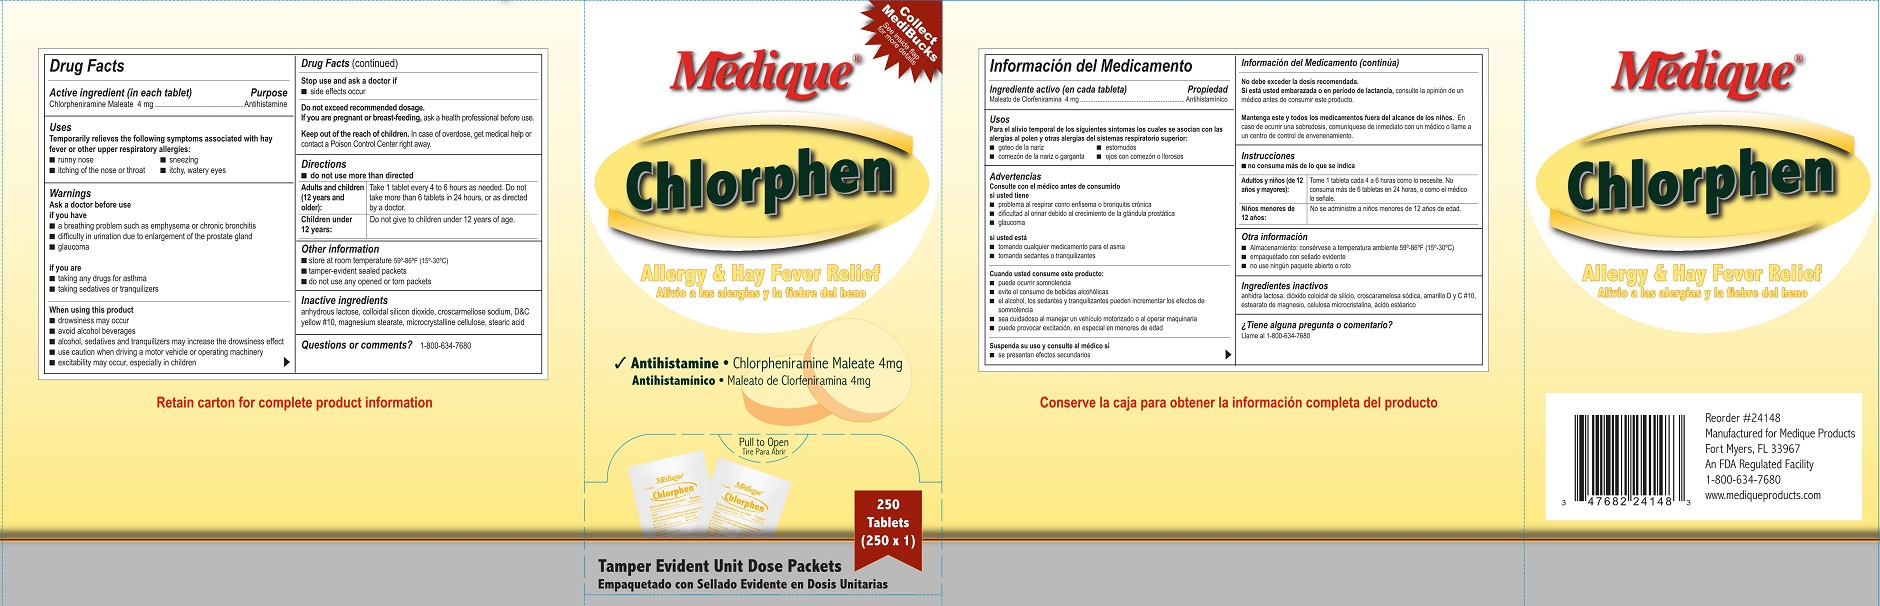 Medique Chlorphen